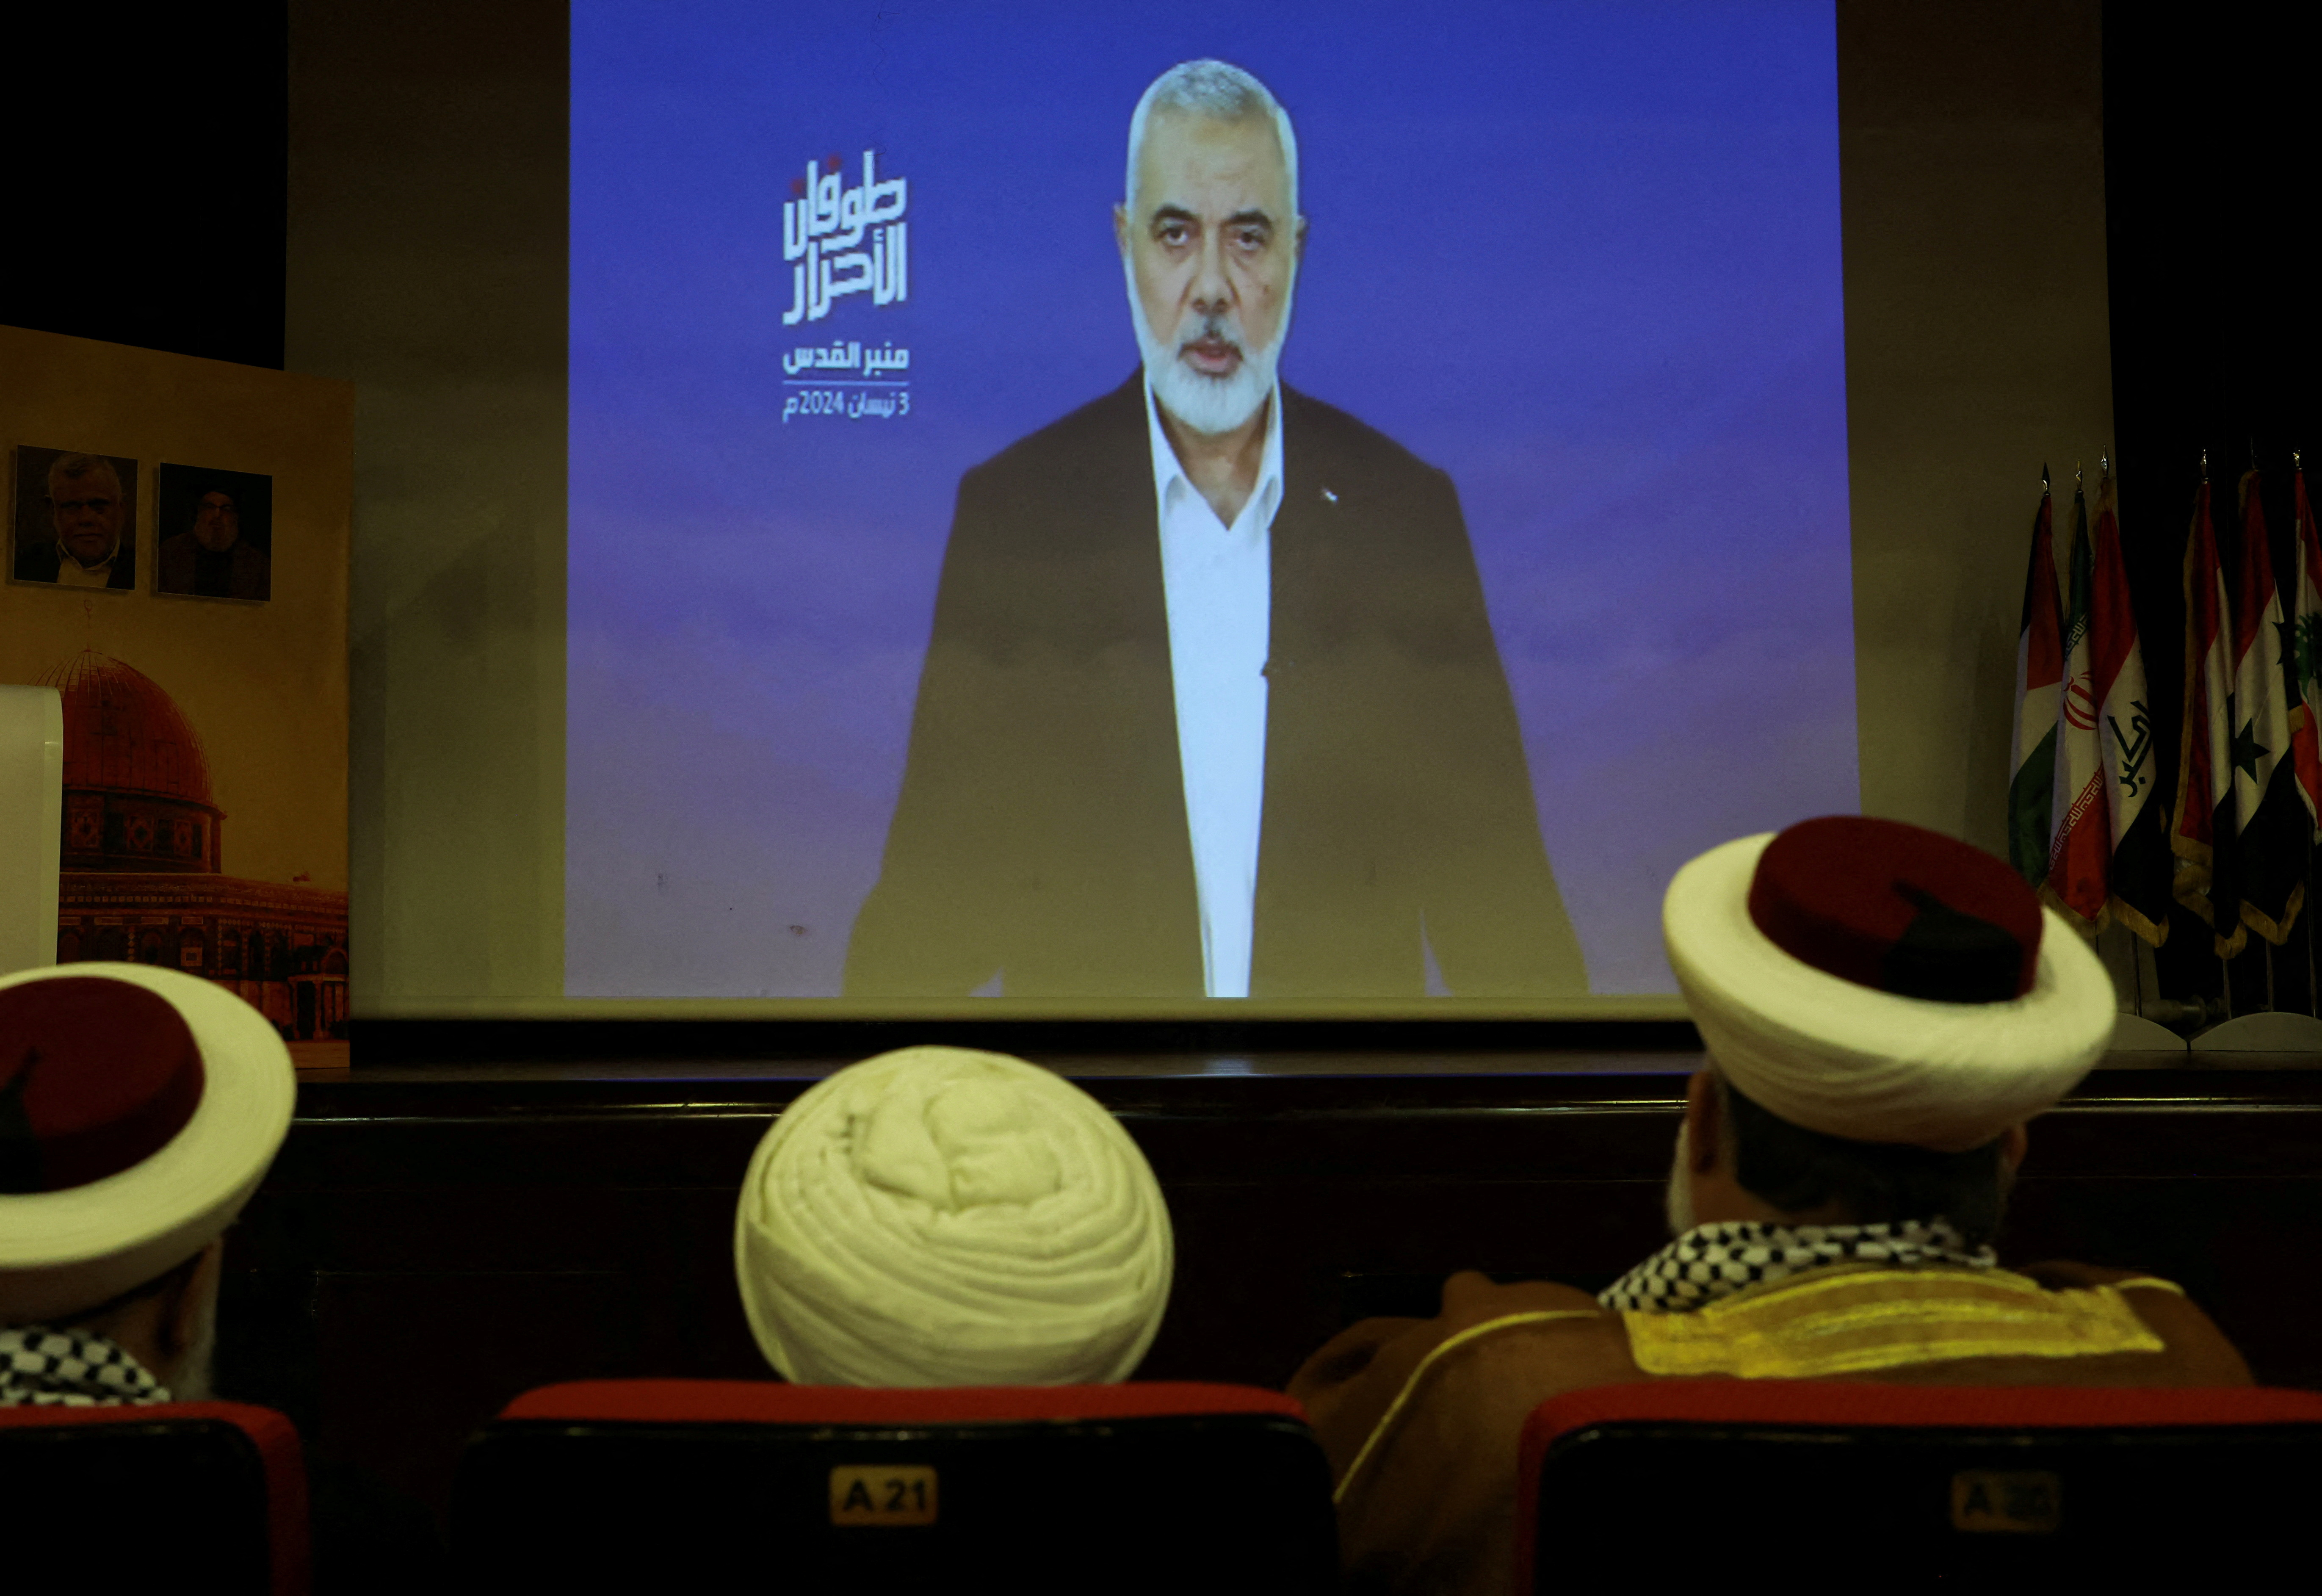 Le Hamas affirme qu'il "ne renoncera pas" à ses exigences pour une trêve à Gaza